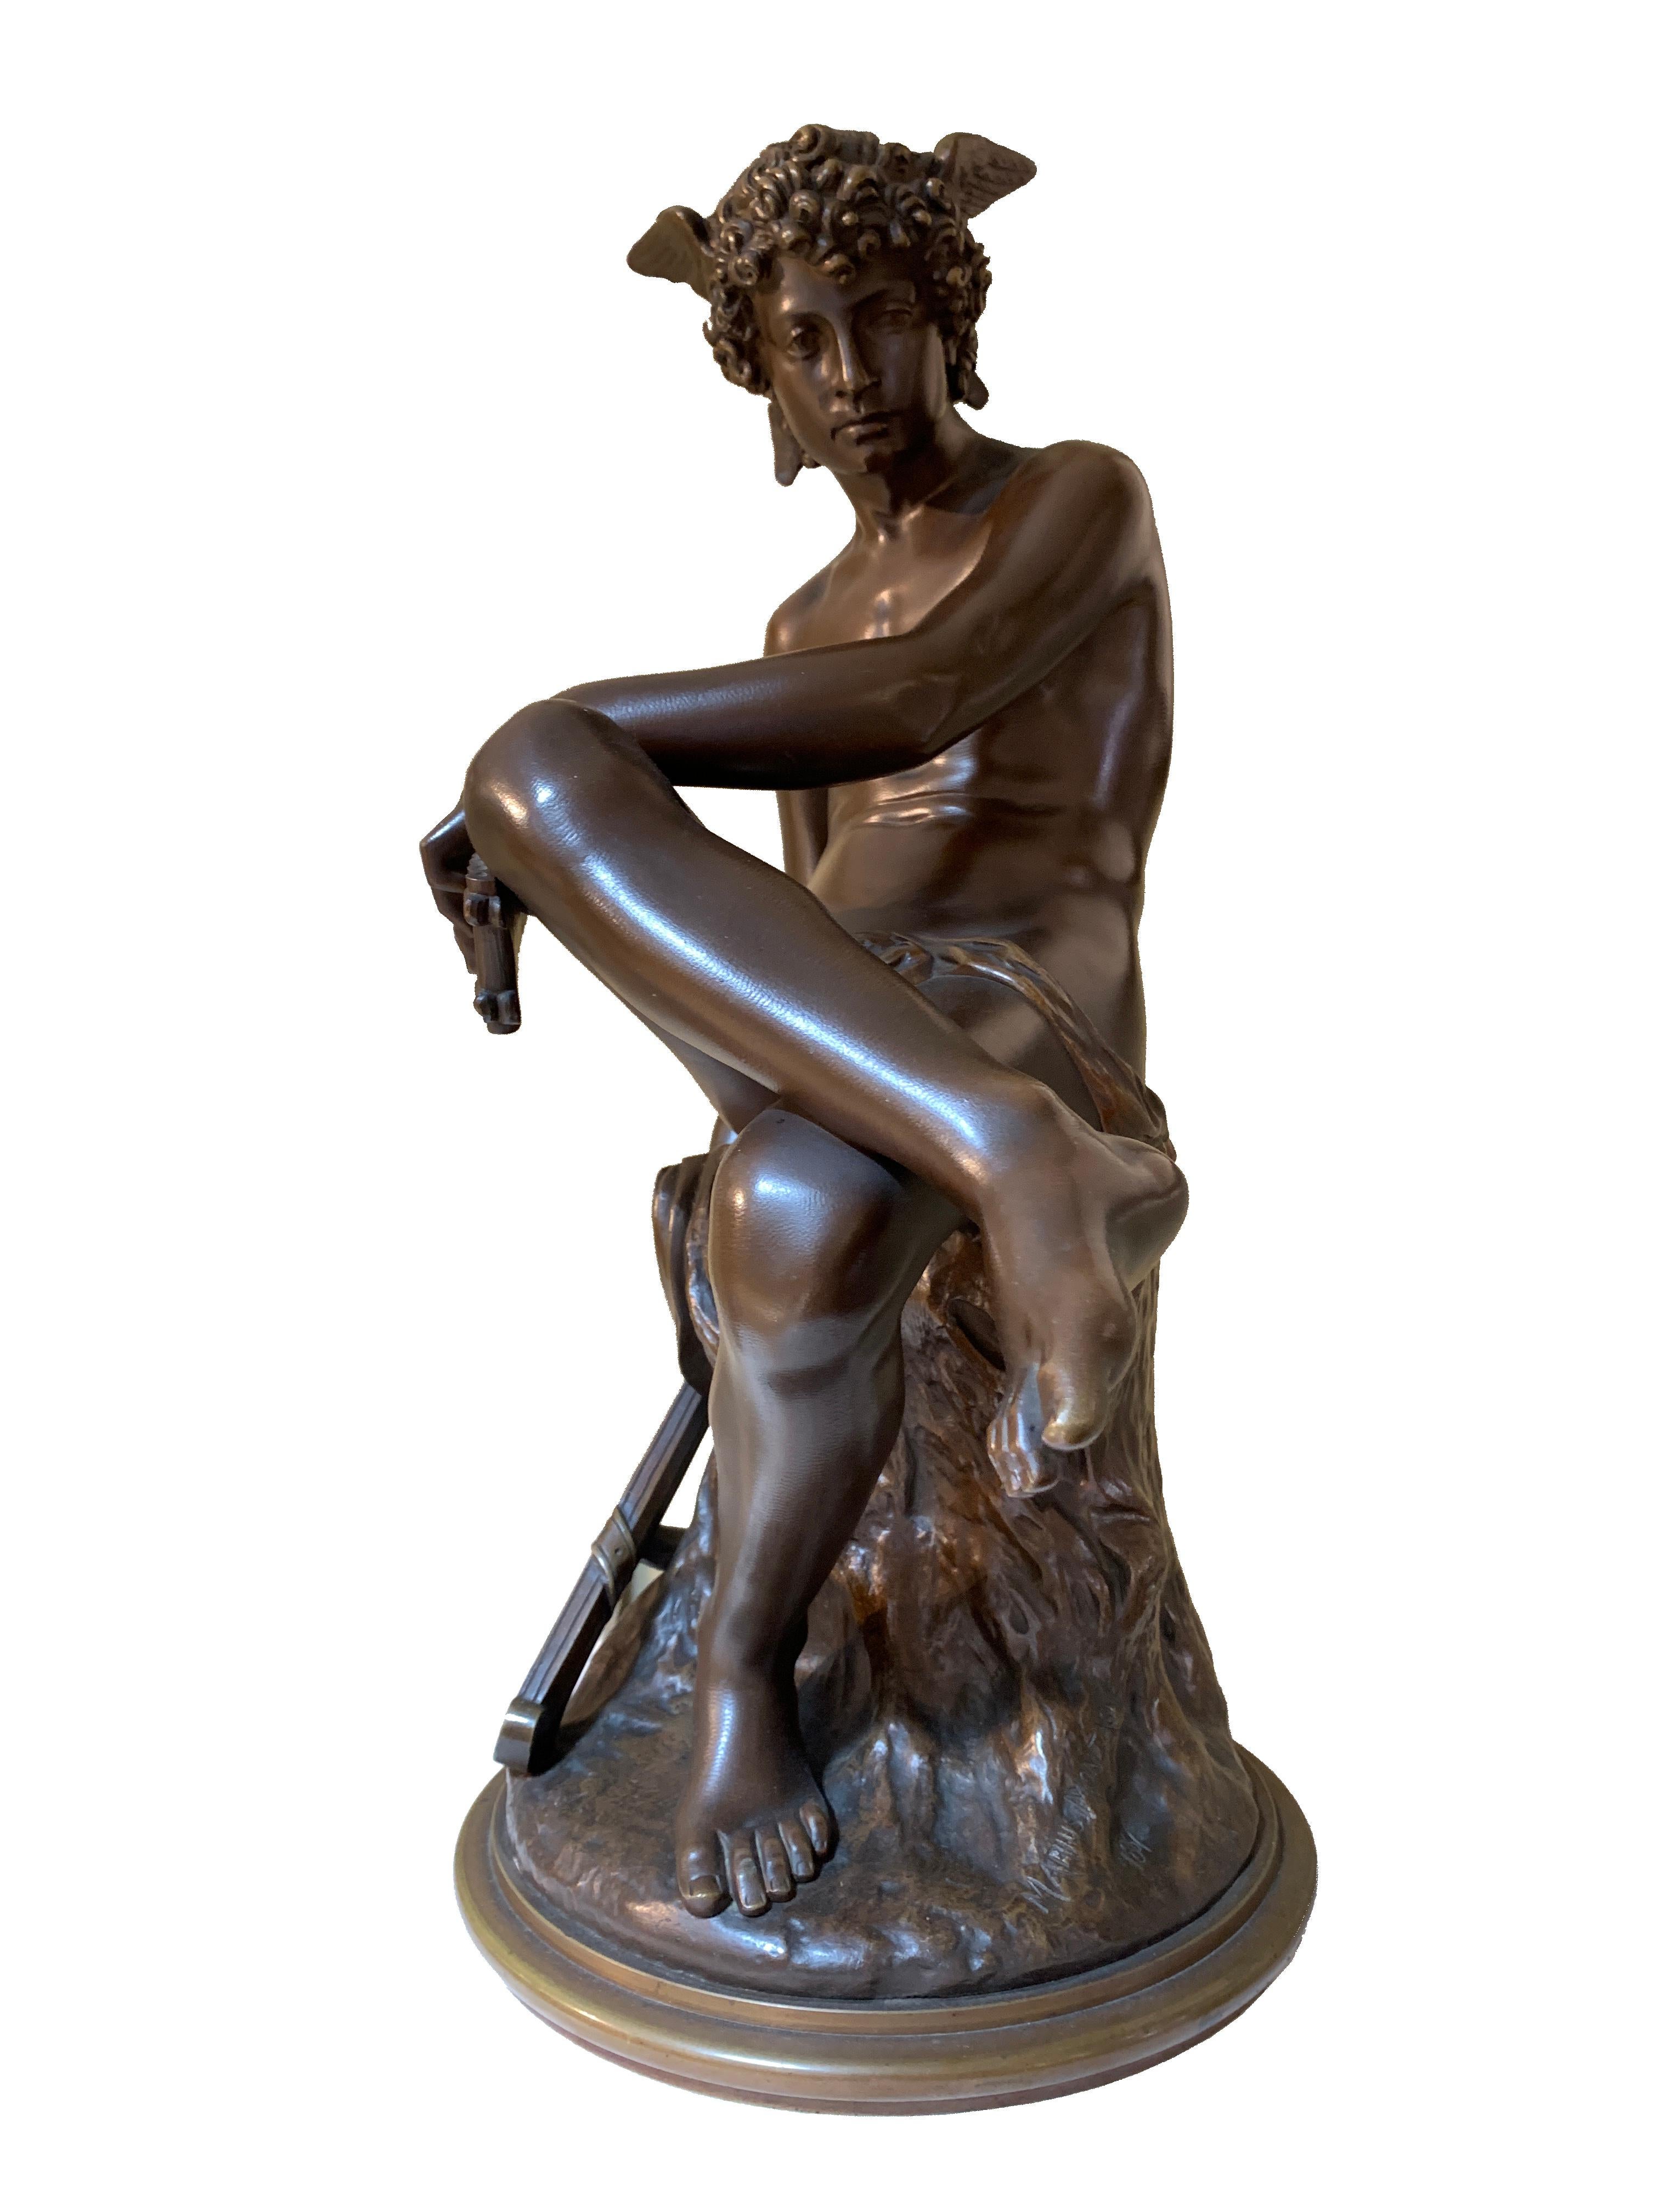 France
Marius Montagne (1828-1879)
Daté de 1867

Sculpture en bronze massif fine et détaillée d'un Hermès ou Mercure assis. Son comportement respire la paix. Une main tient sa flûte de pan, l'autre son épée.
Une sculpture merveilleusement